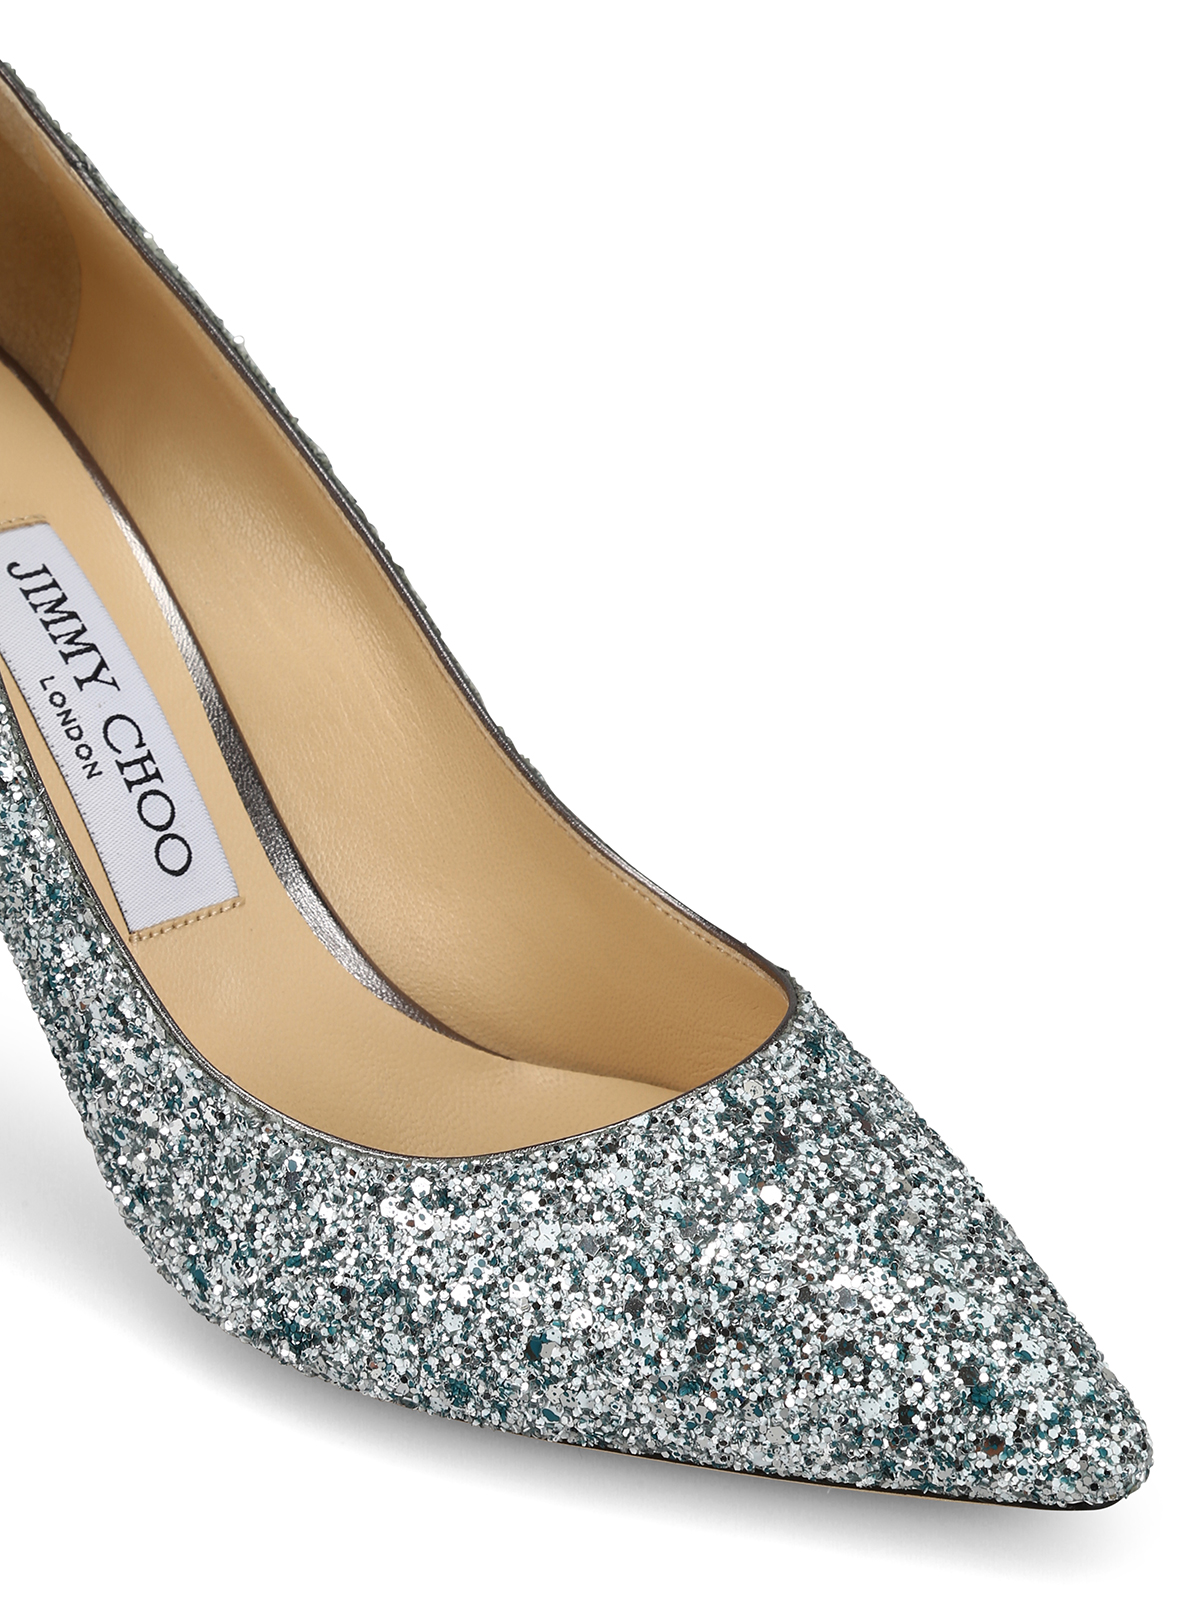 jimmy choo glitter high heels